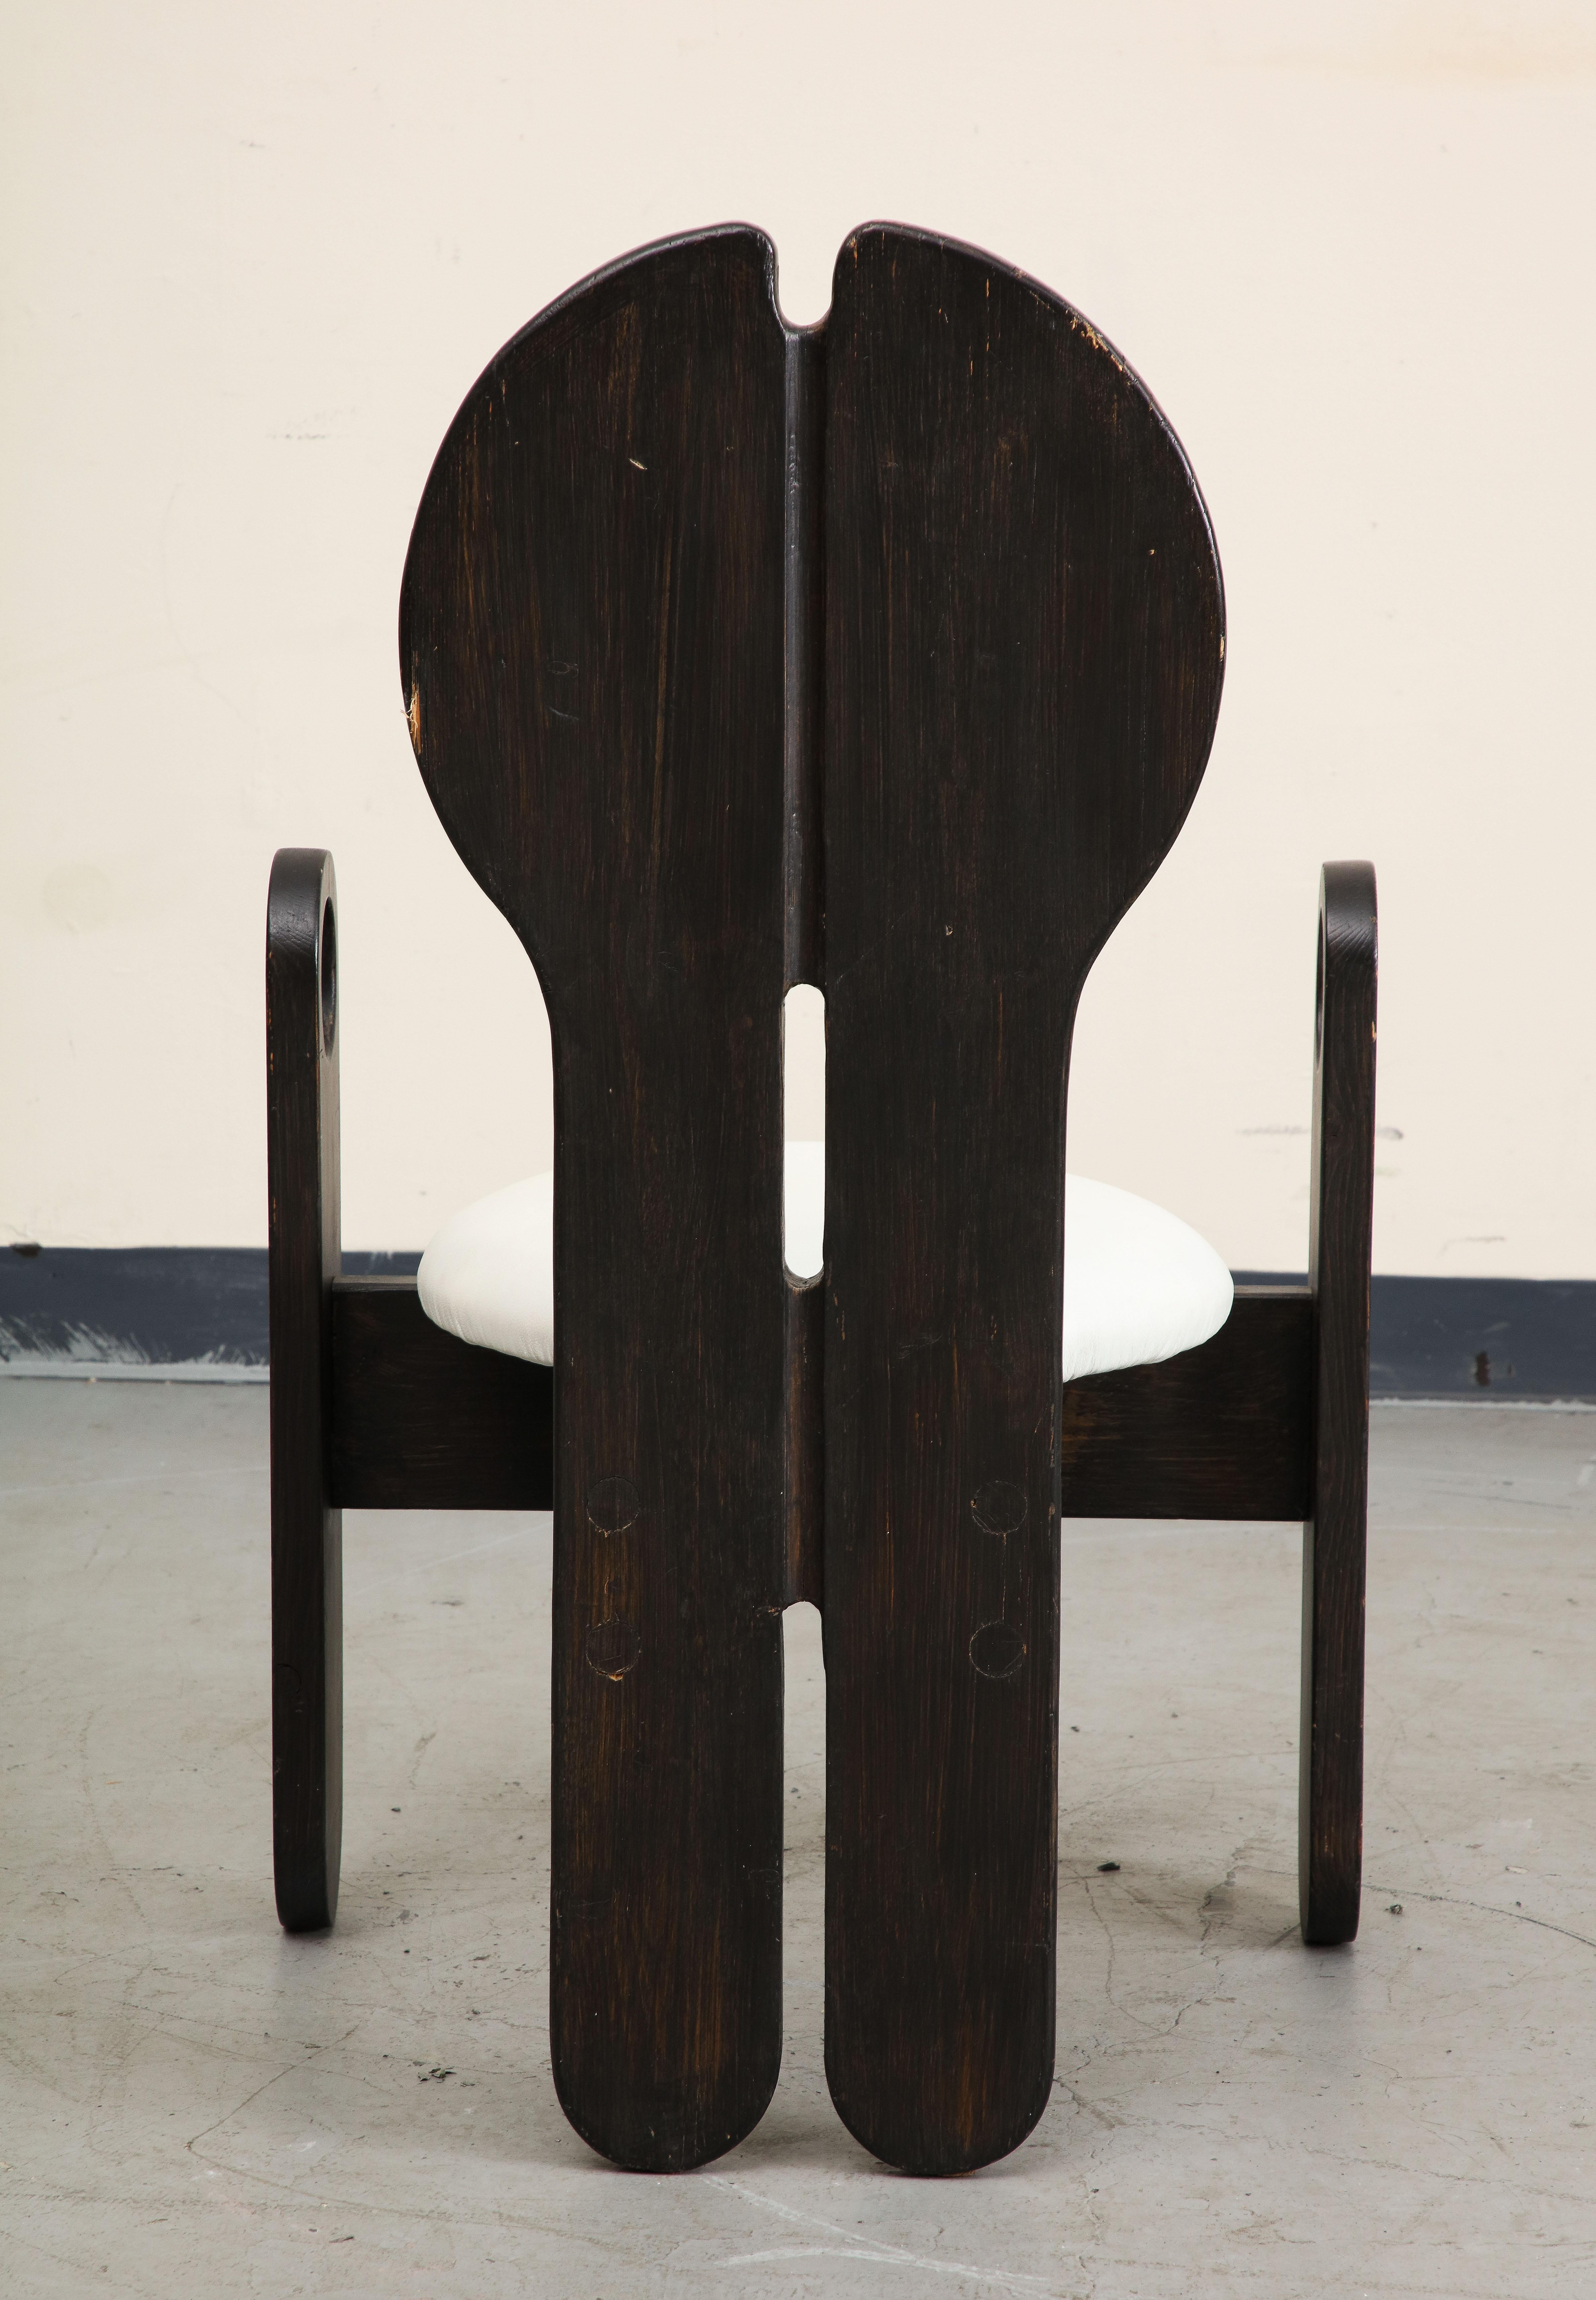 Ungarischer Studio-Beistellstuhl aus weißem Leder und Holz von Szedleczky Design, 1970er Jahre (Ende des 20. Jahrhunderts) im Angebot